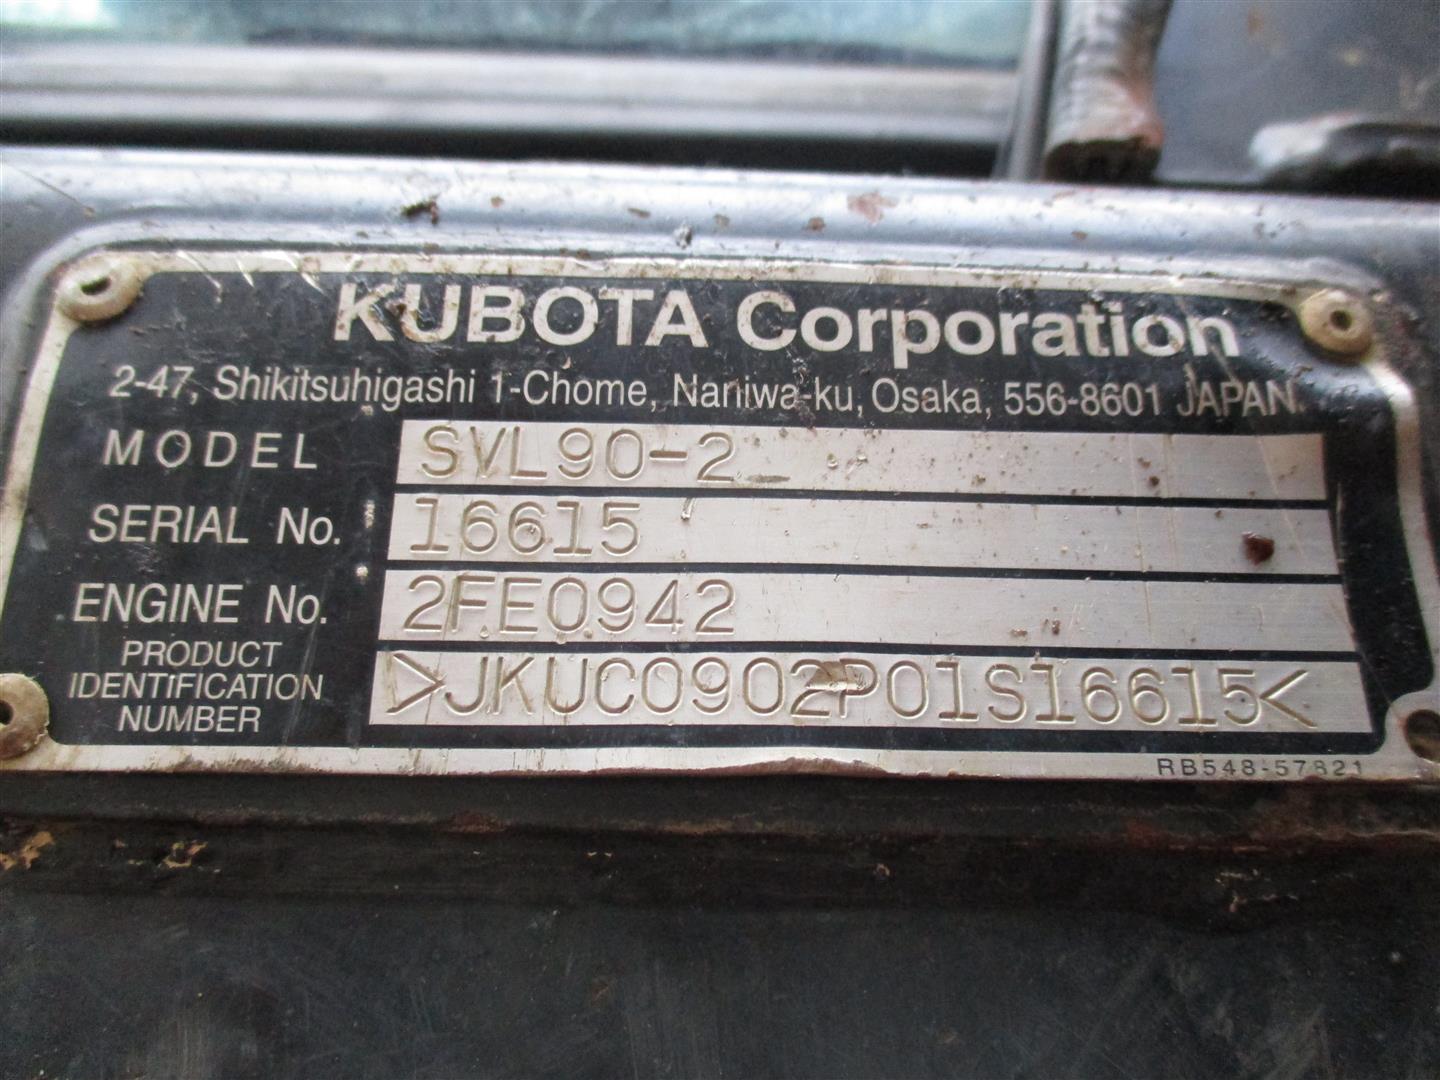 Kubota SVL90-2HC